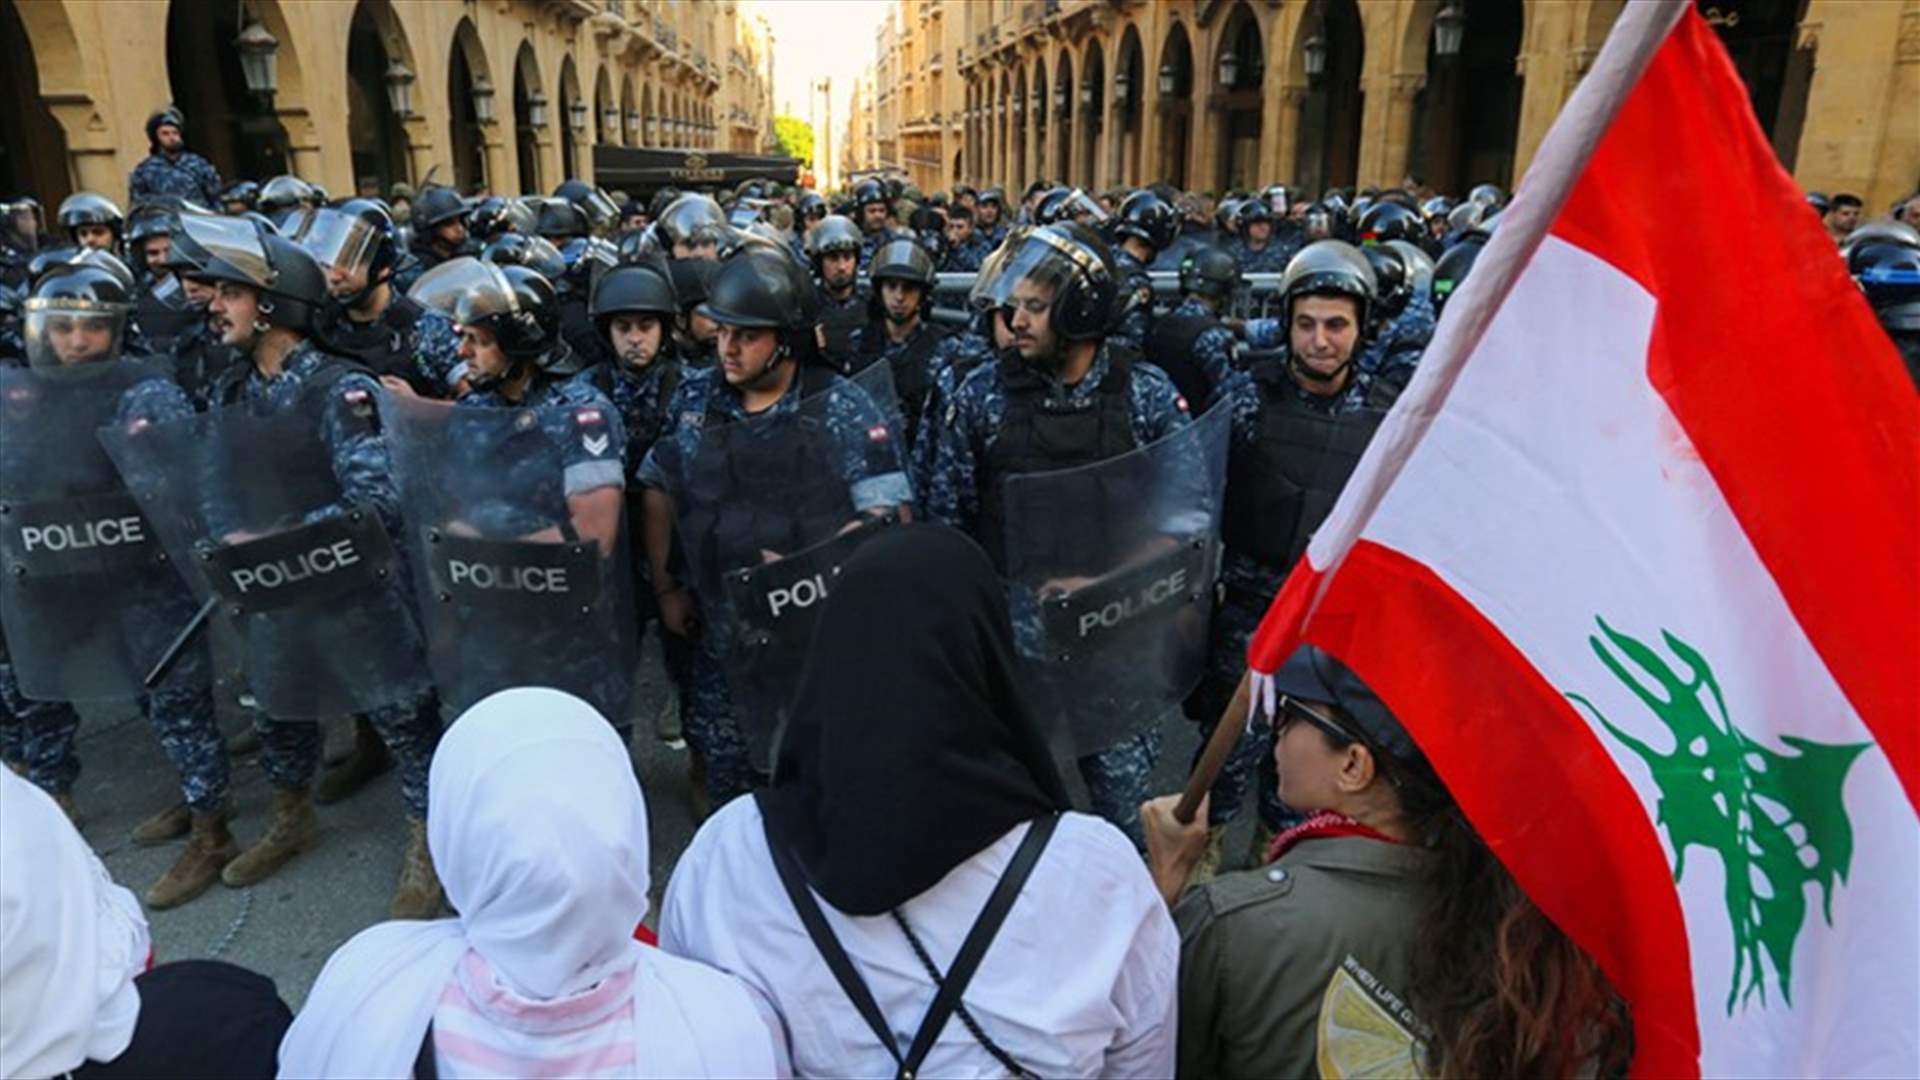 صور من تظاهرات وسط بيروت نشرتها وكالة رويترز اليوم